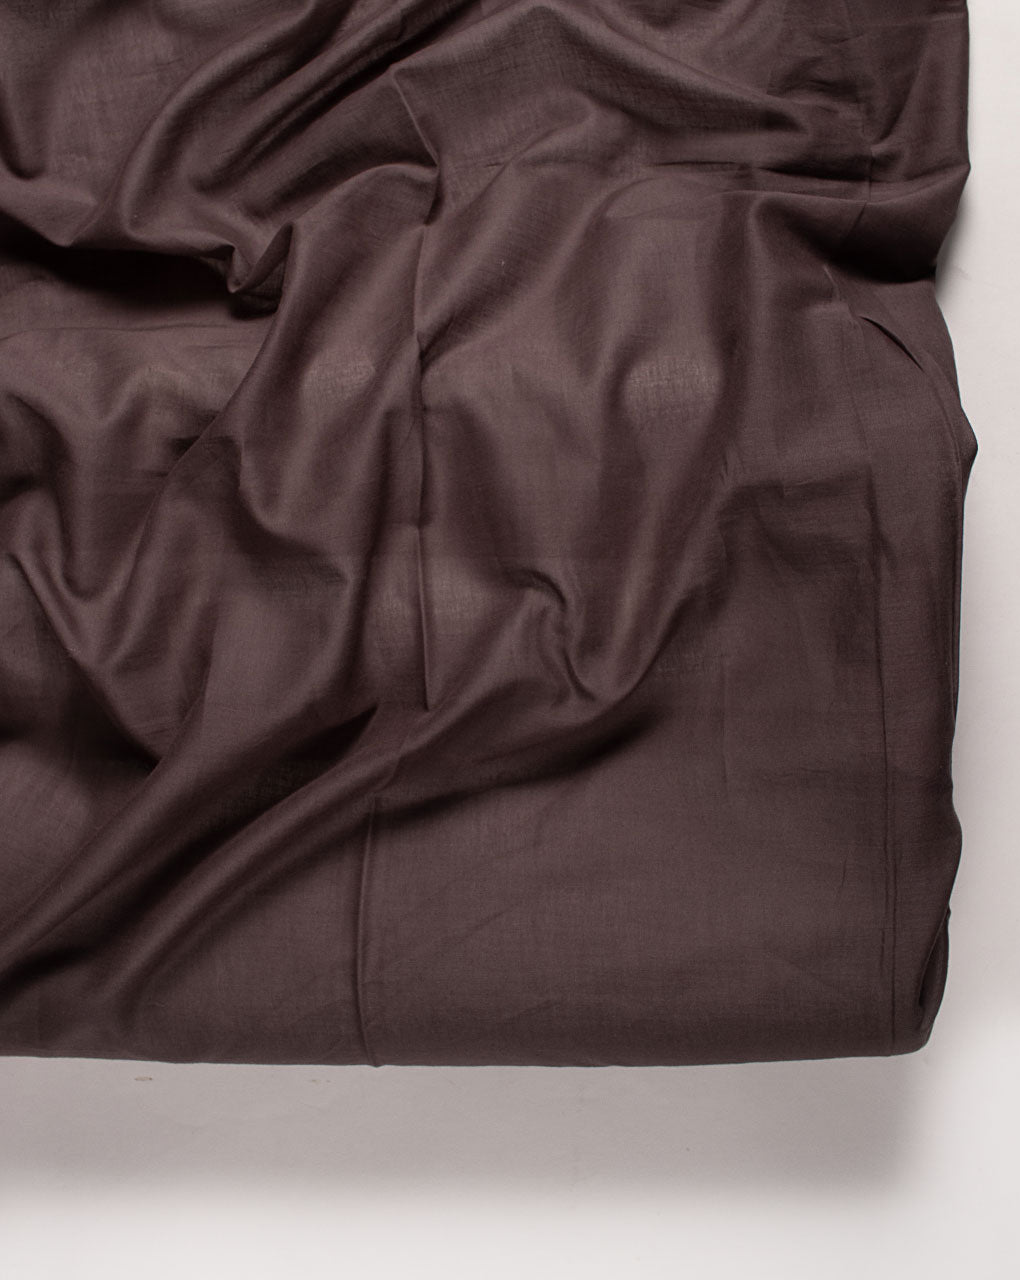 Dark Grey Plain Voile Cotton Fabric